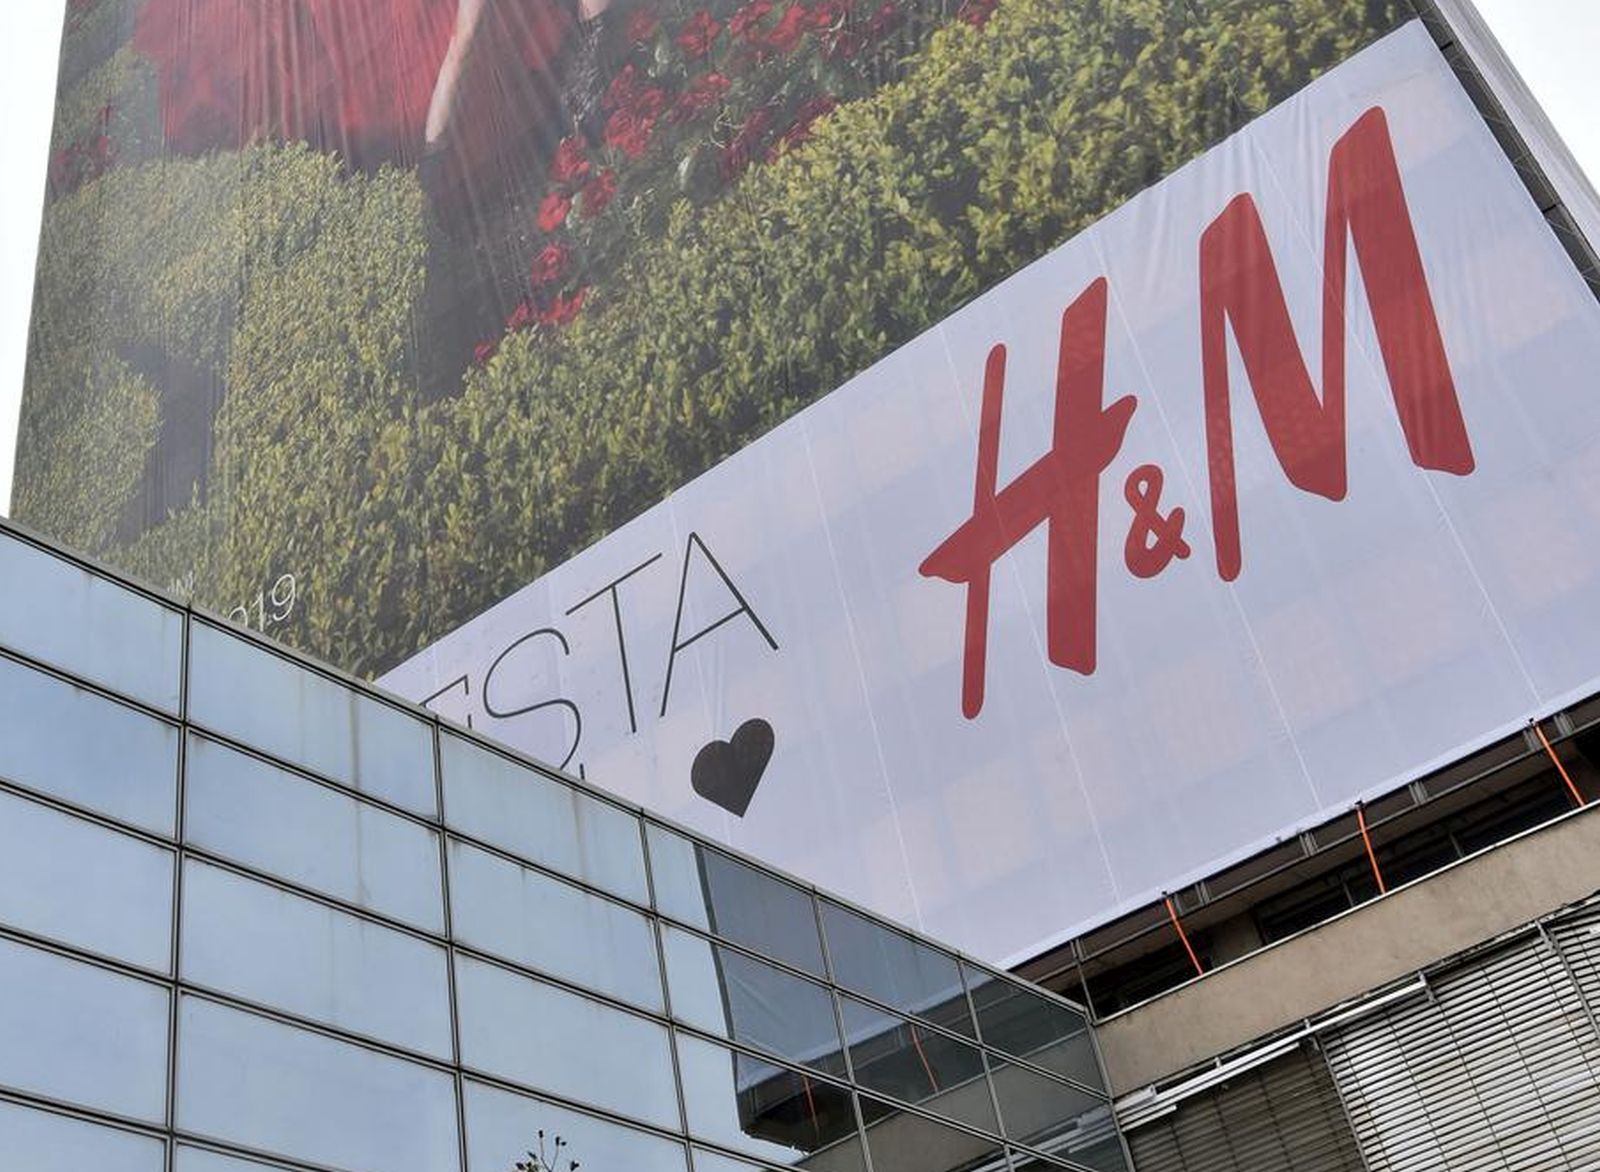 02.11.2019., Zagreb - Tvrtka H&M reklamnim plakatima obavila je cijeli Vjesnikov neboder na Slavonskoj aveniji.rPhoto: Davorin Visnjic/PIXSELL